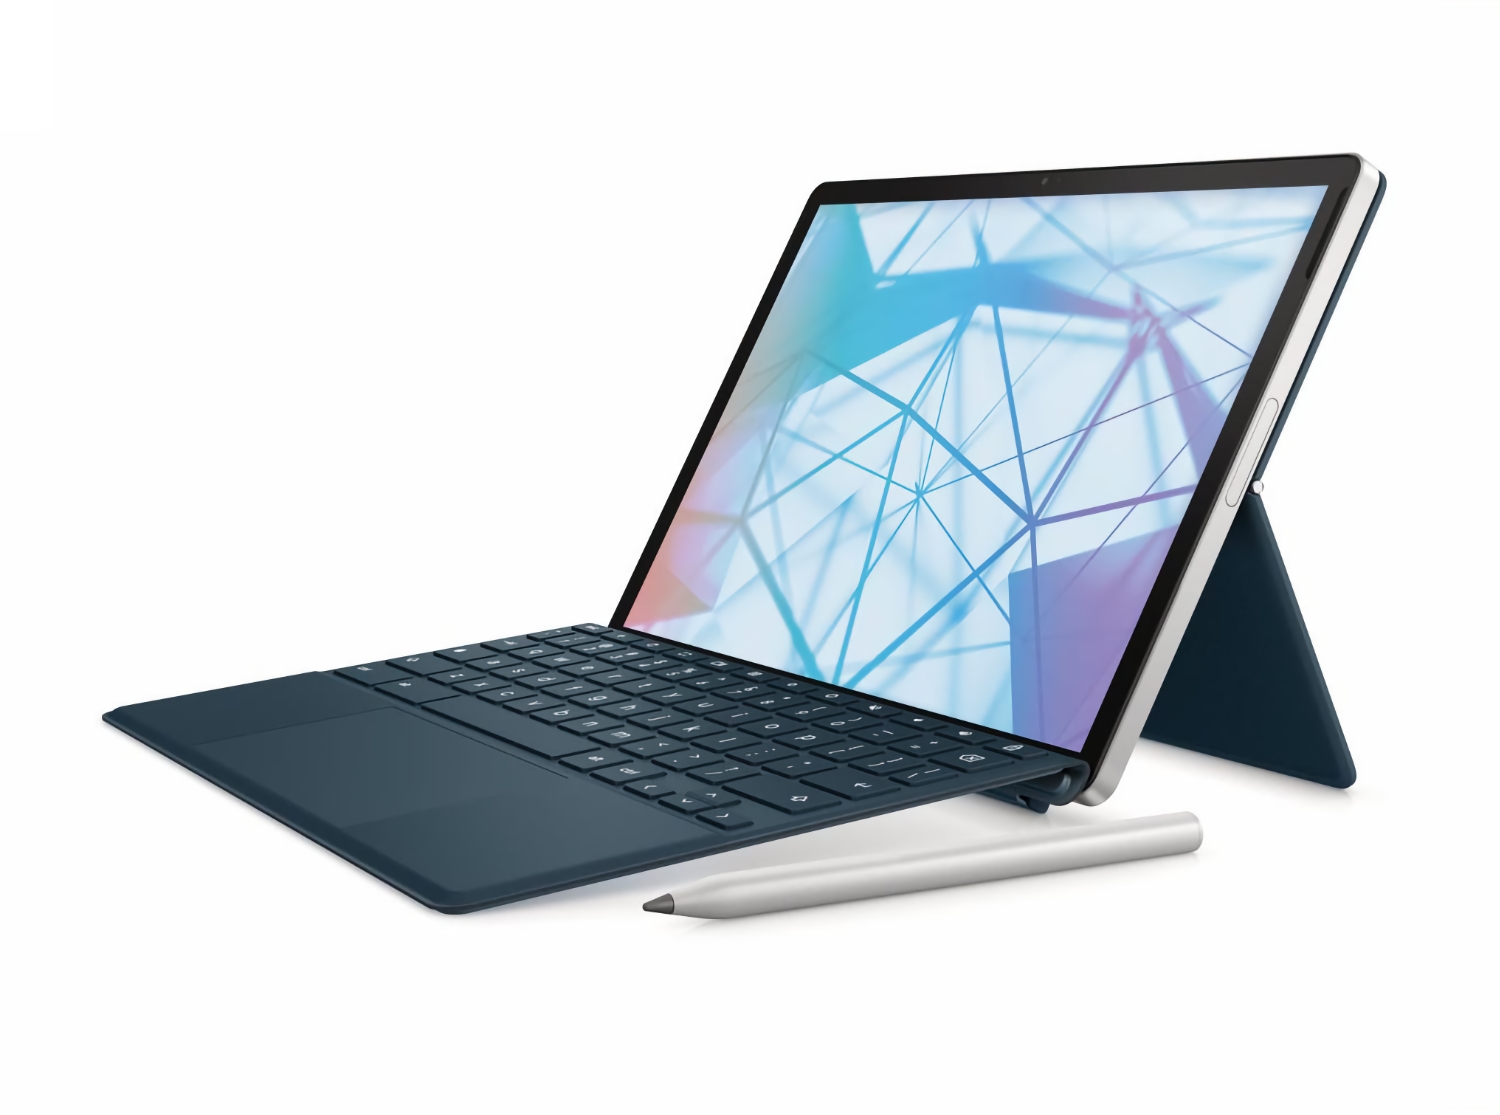 HP Chromebook x2 11: hybrydowe urządzenie z Chrome OS z układem Snapdragon 7c, LTE i obsługą rysika za 599 dolarów